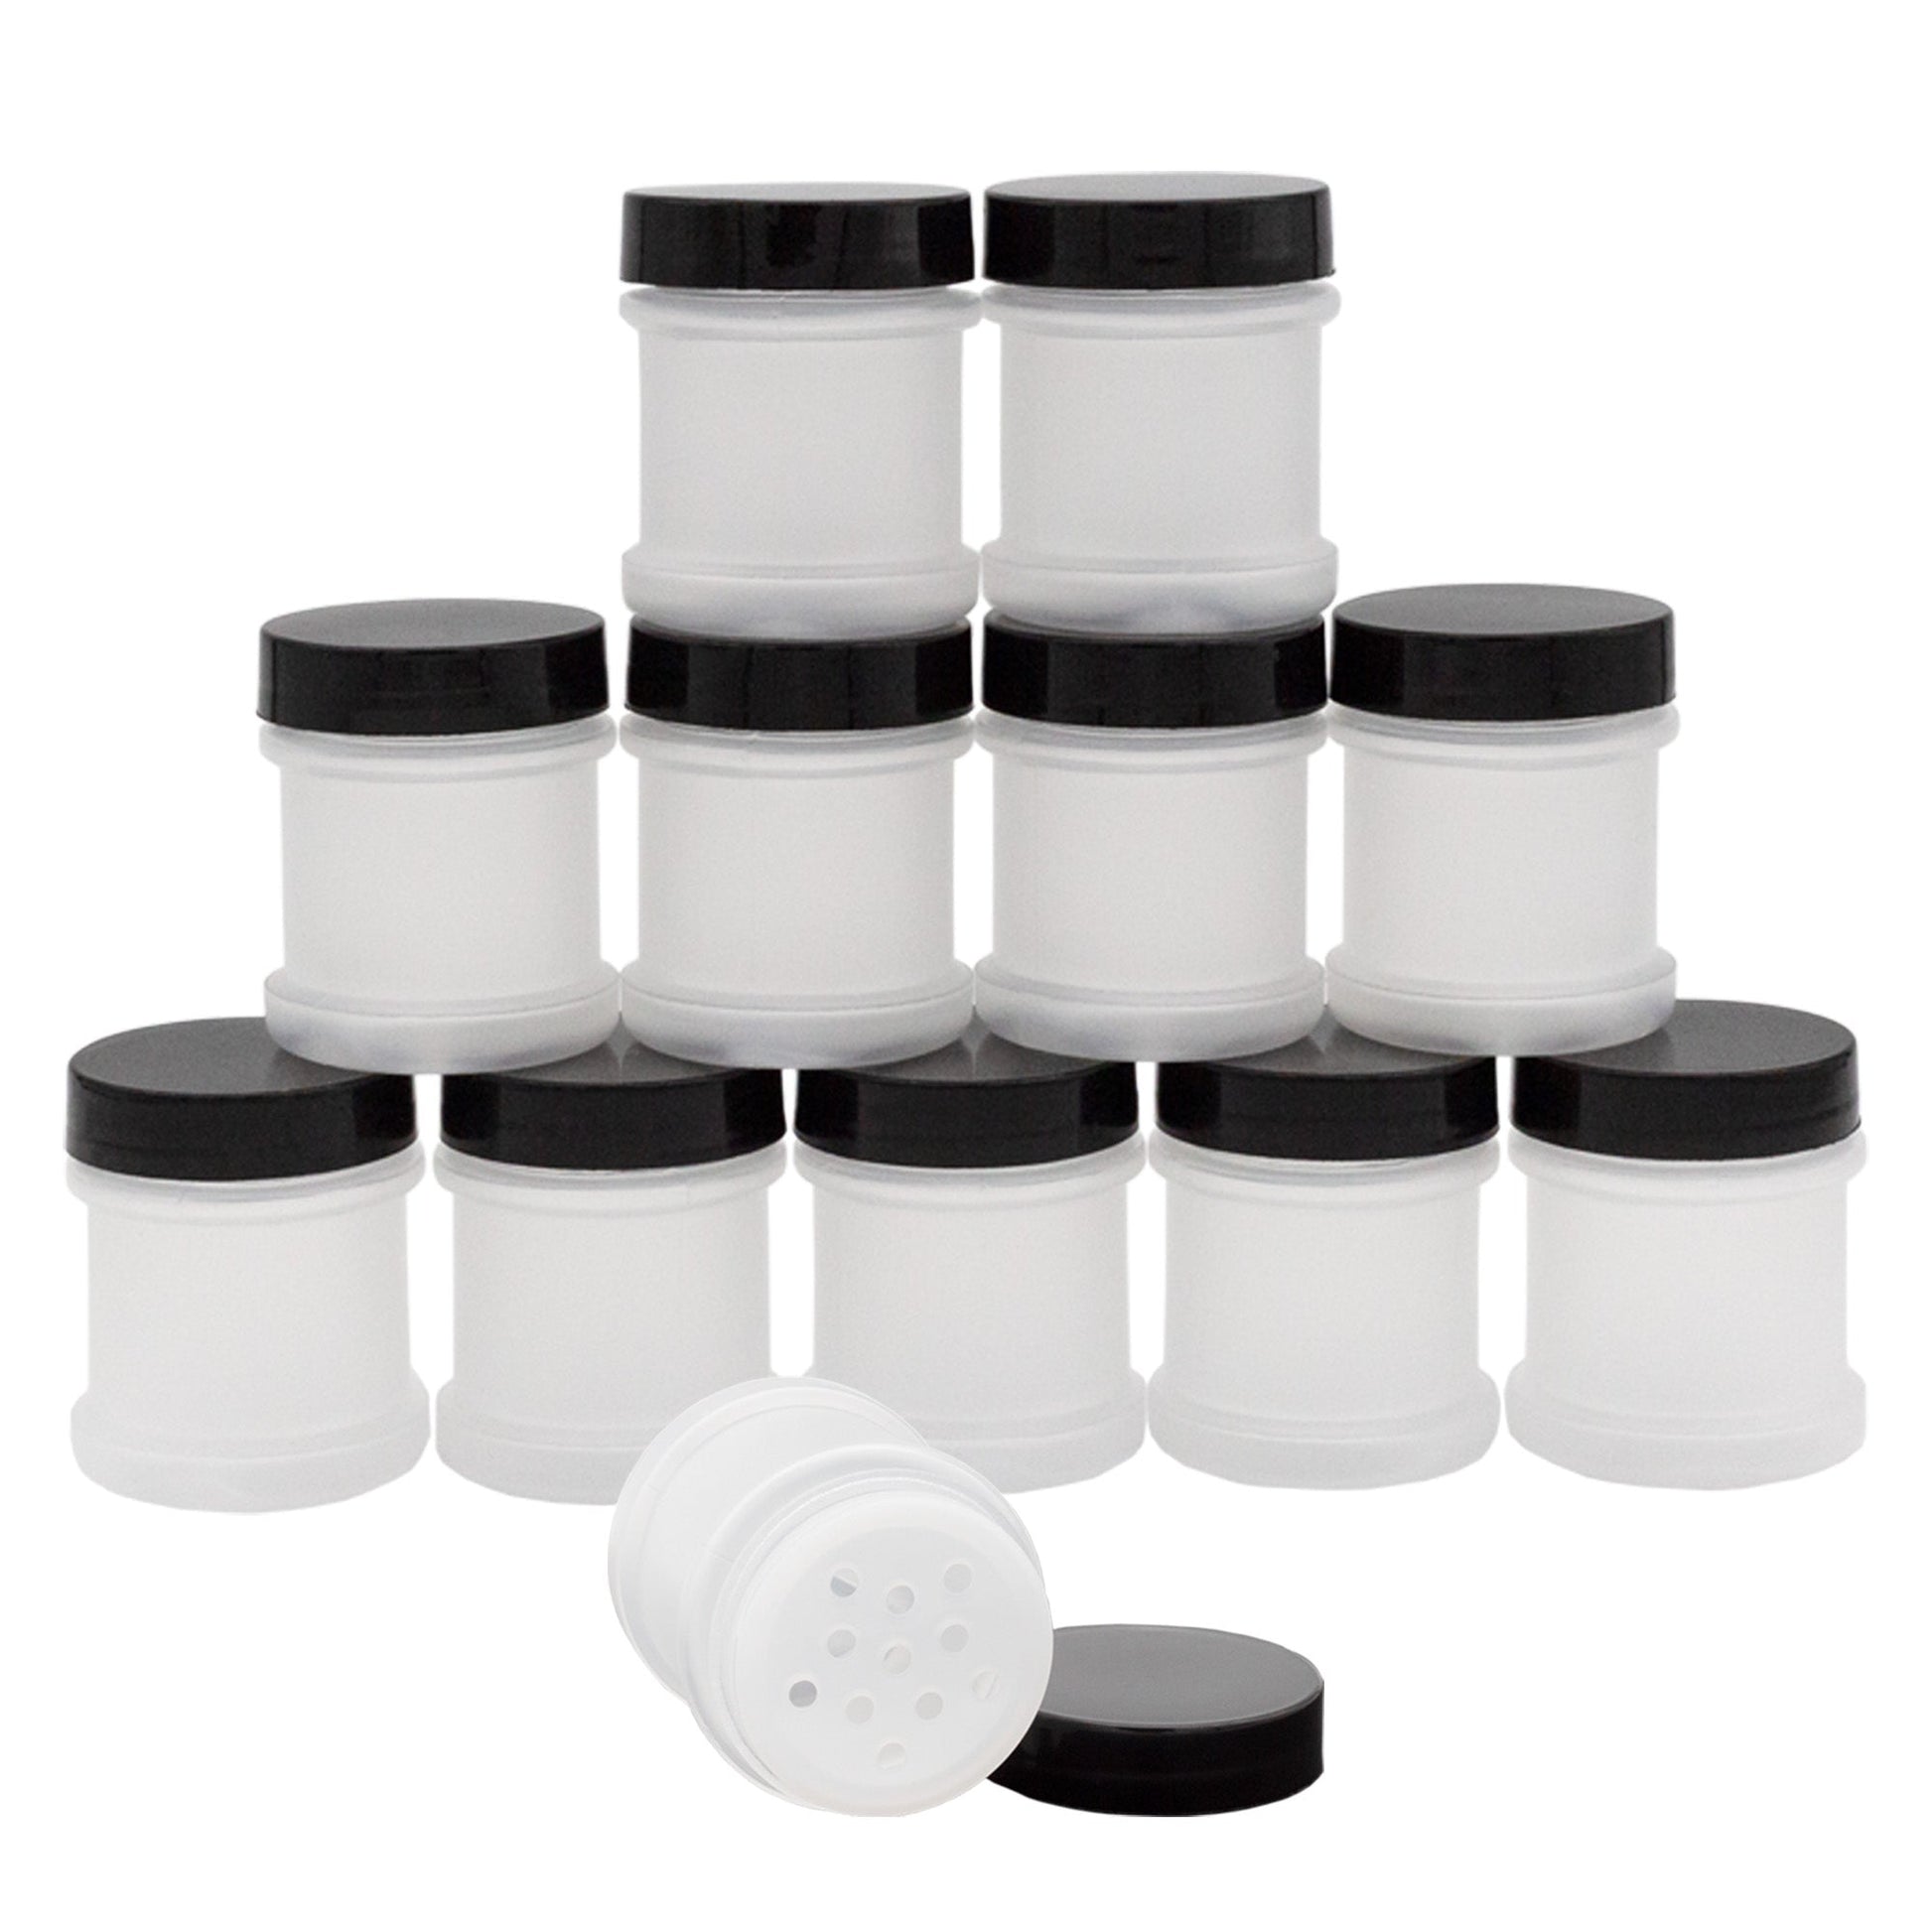 Mini Plastic Spice Jars w/Sifters (12-Pack, Black) - sh2303cb0